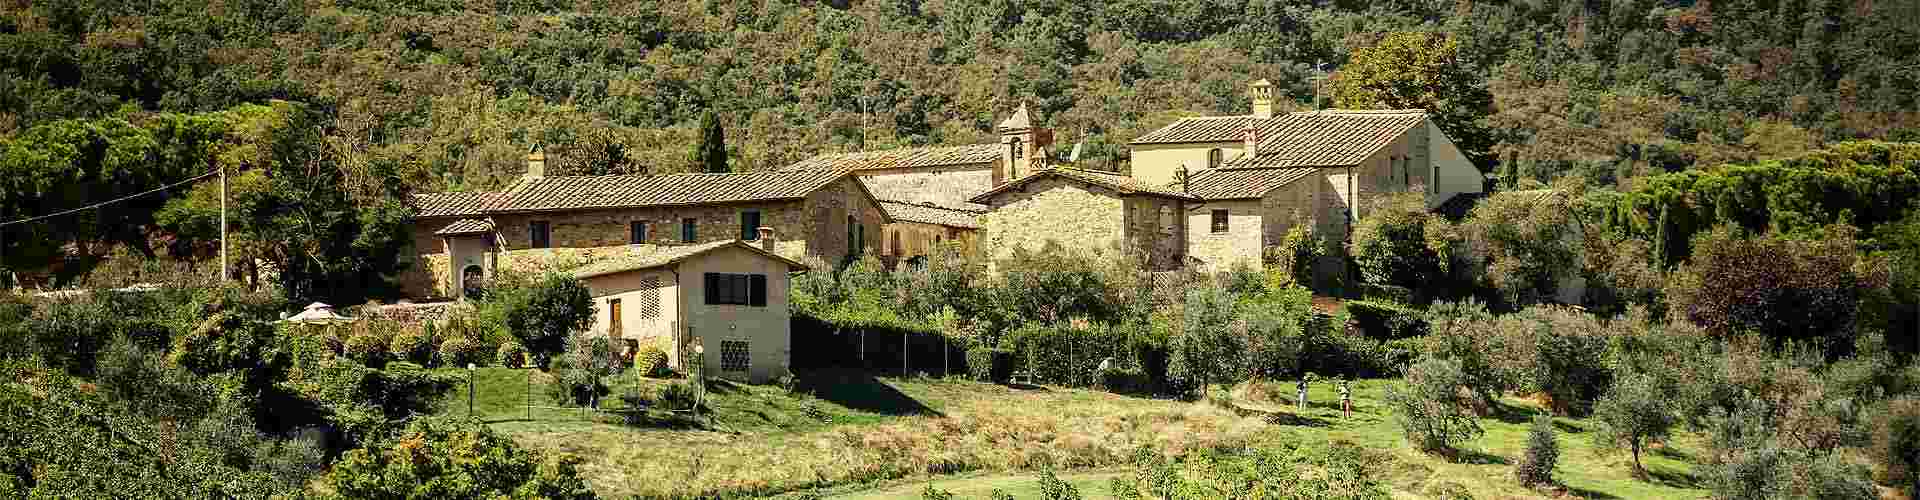 Casas rurales con actividades en España
          
          

